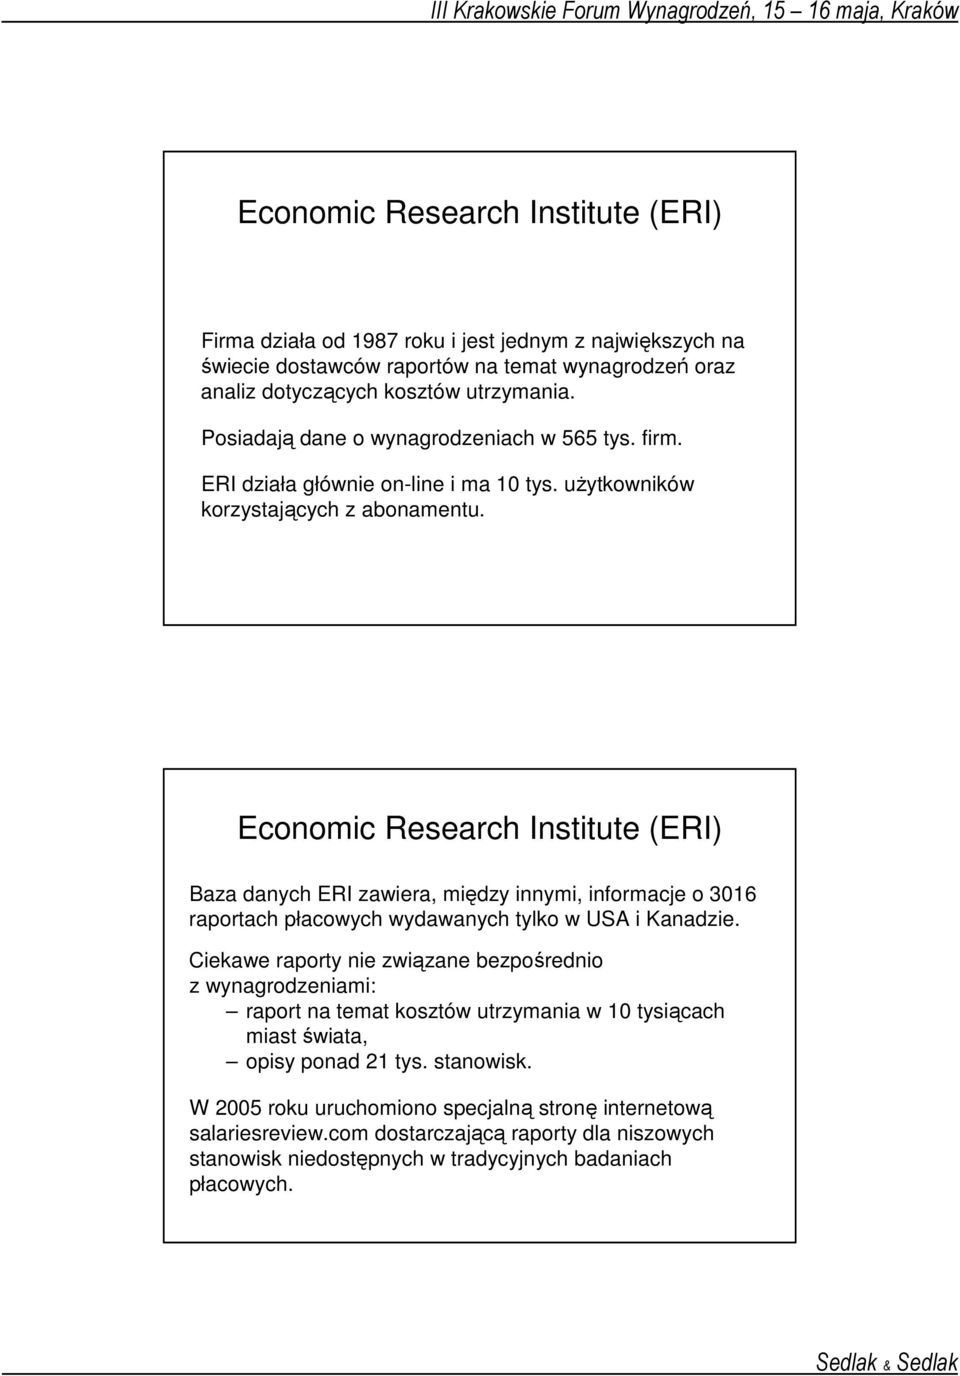 Economic Research Institute (ERI) Baza danych ERI zawiera, między innymi, informacje o 3016 raportach płacowych wydawanych tylko w USA i Kanadzie.